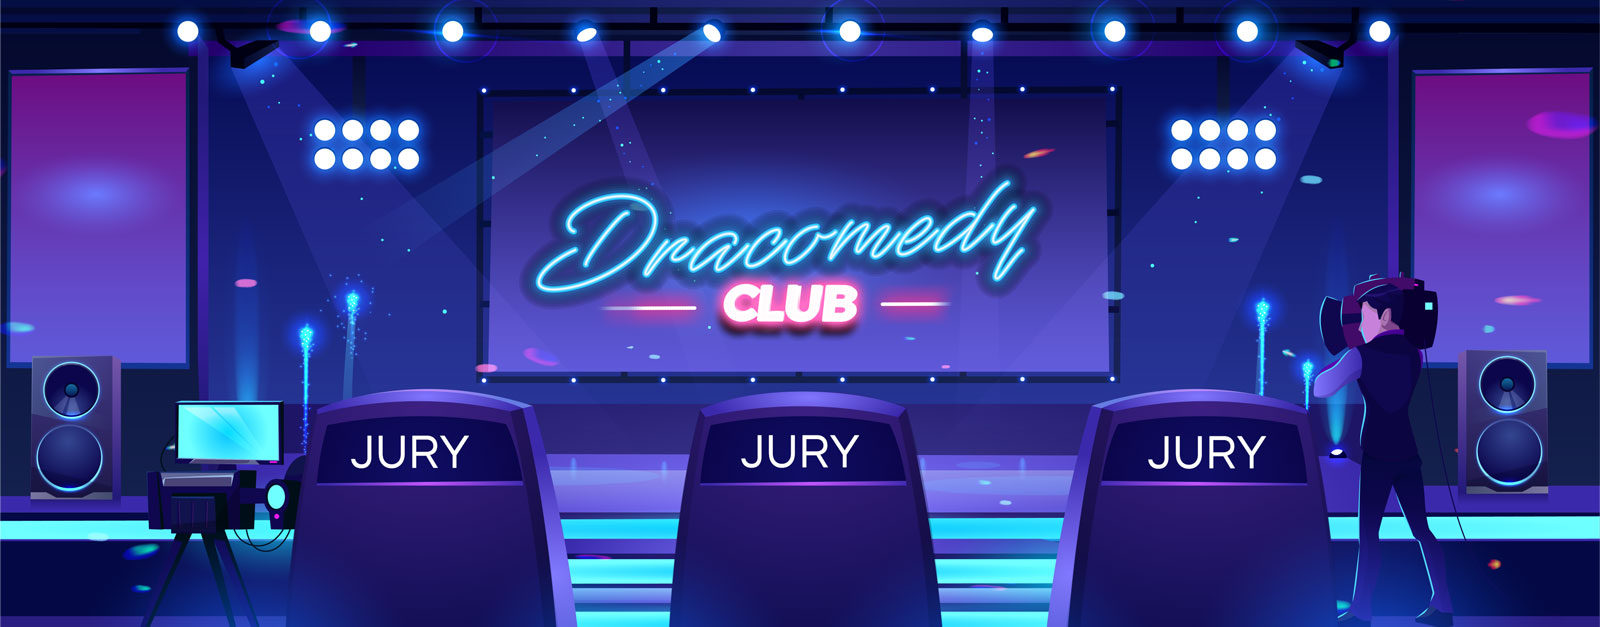 JURY DU DRACOMEDY CLUB